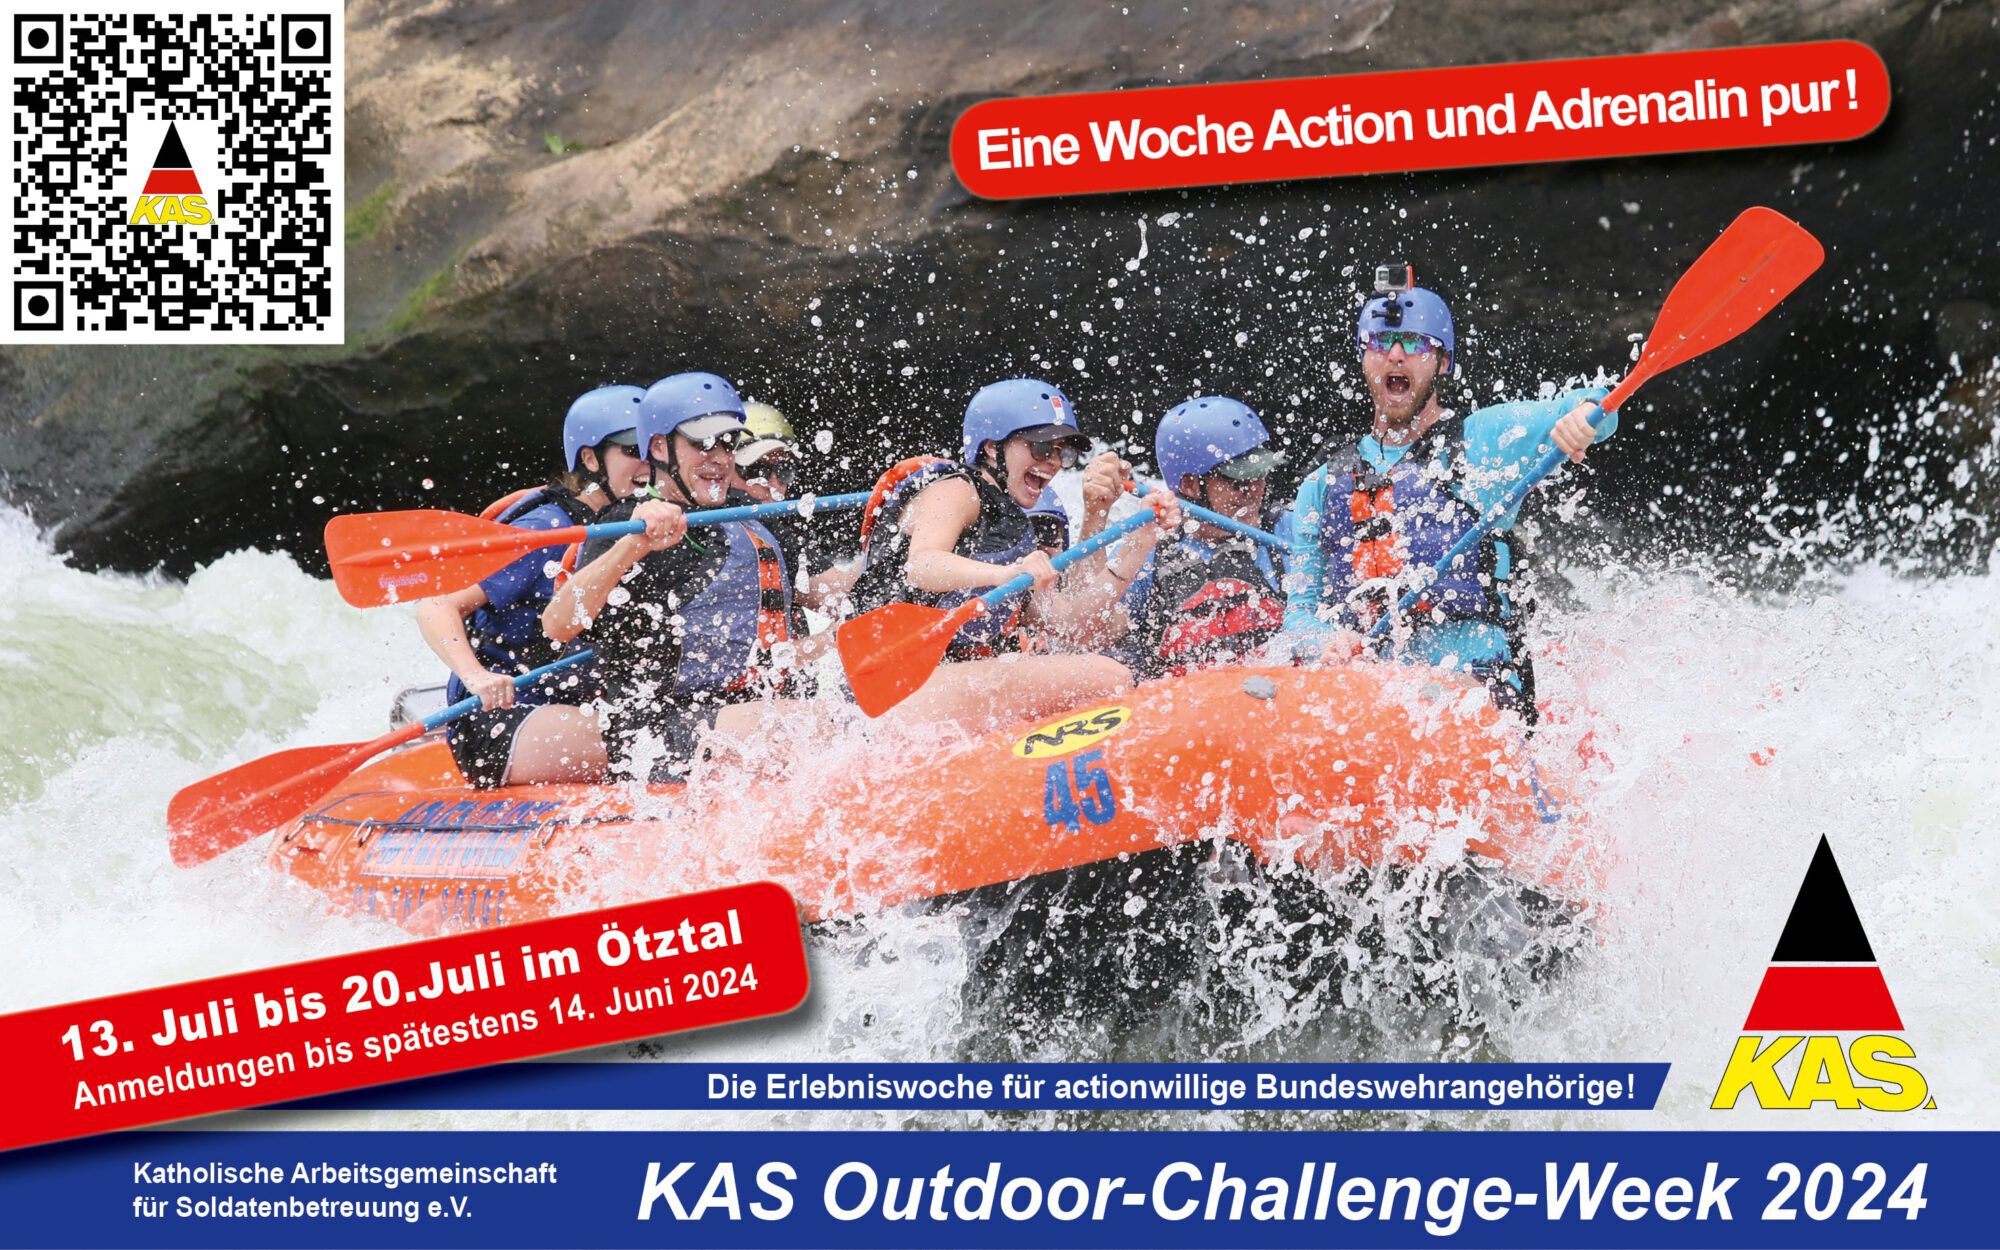 KAS Outdoor-Challenge-Week 2024: Herzliche Einladung zur Actionwoche nach Ötztal vom 13. Juli bis 20. Juli.